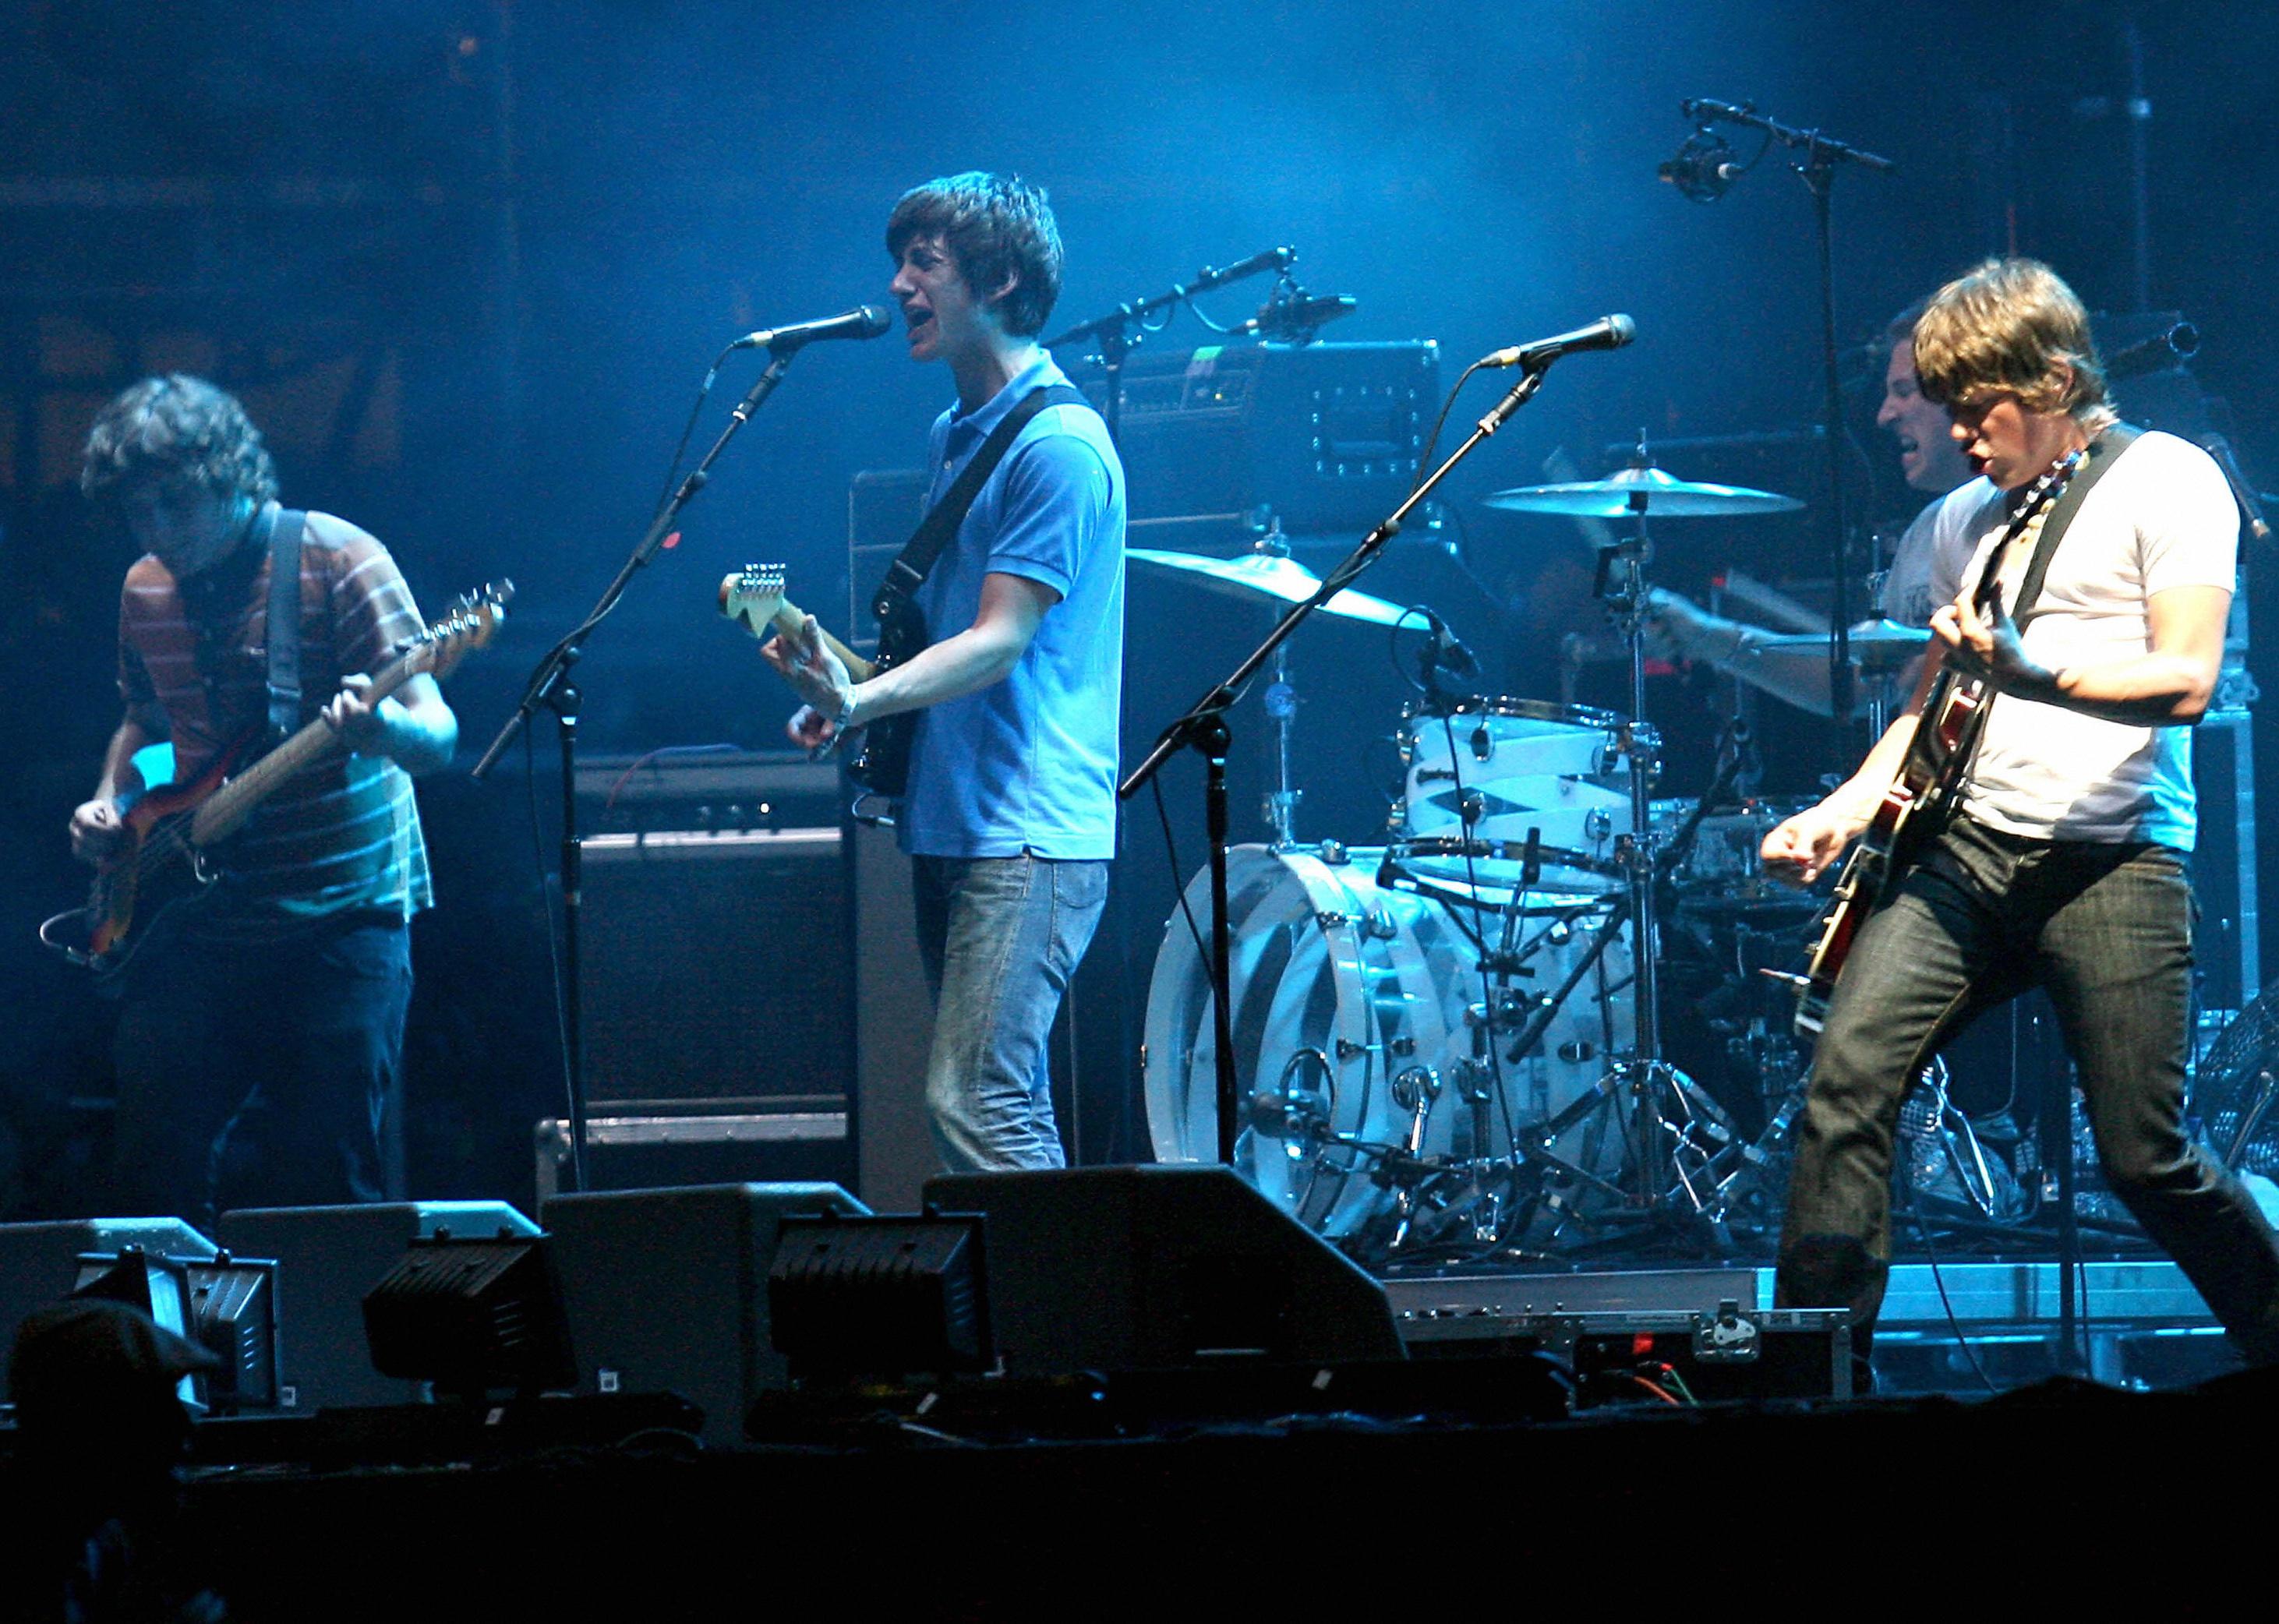 Arctic Monkeys perform at a concert